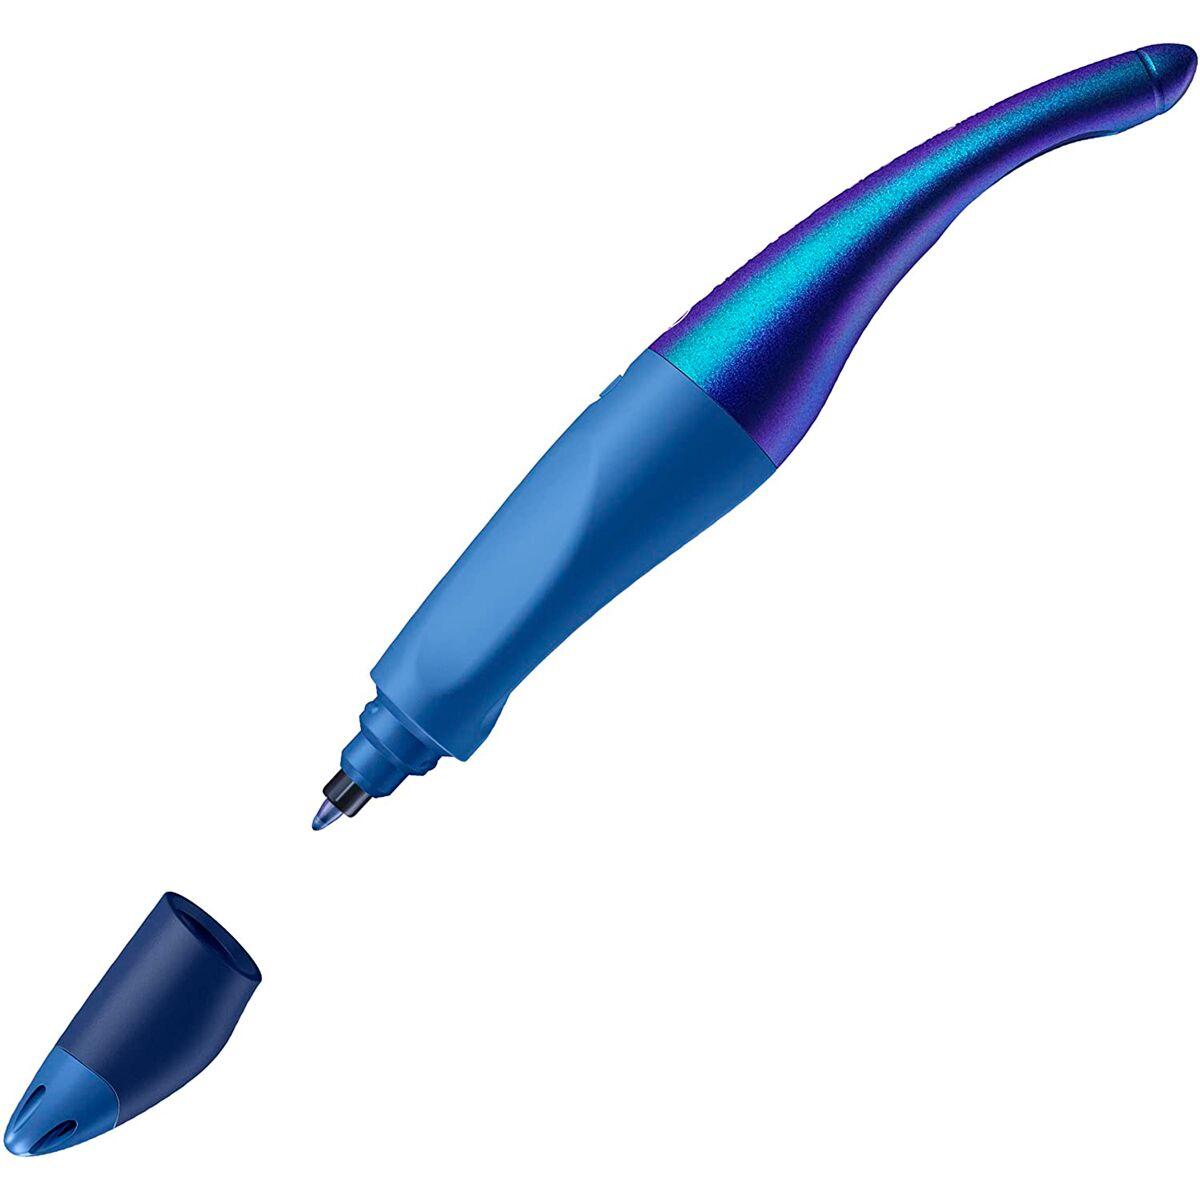 Ручка-роллер STABILO EASYoriginal для правшей, эргономичная. Корпус синий/голография, фото 1